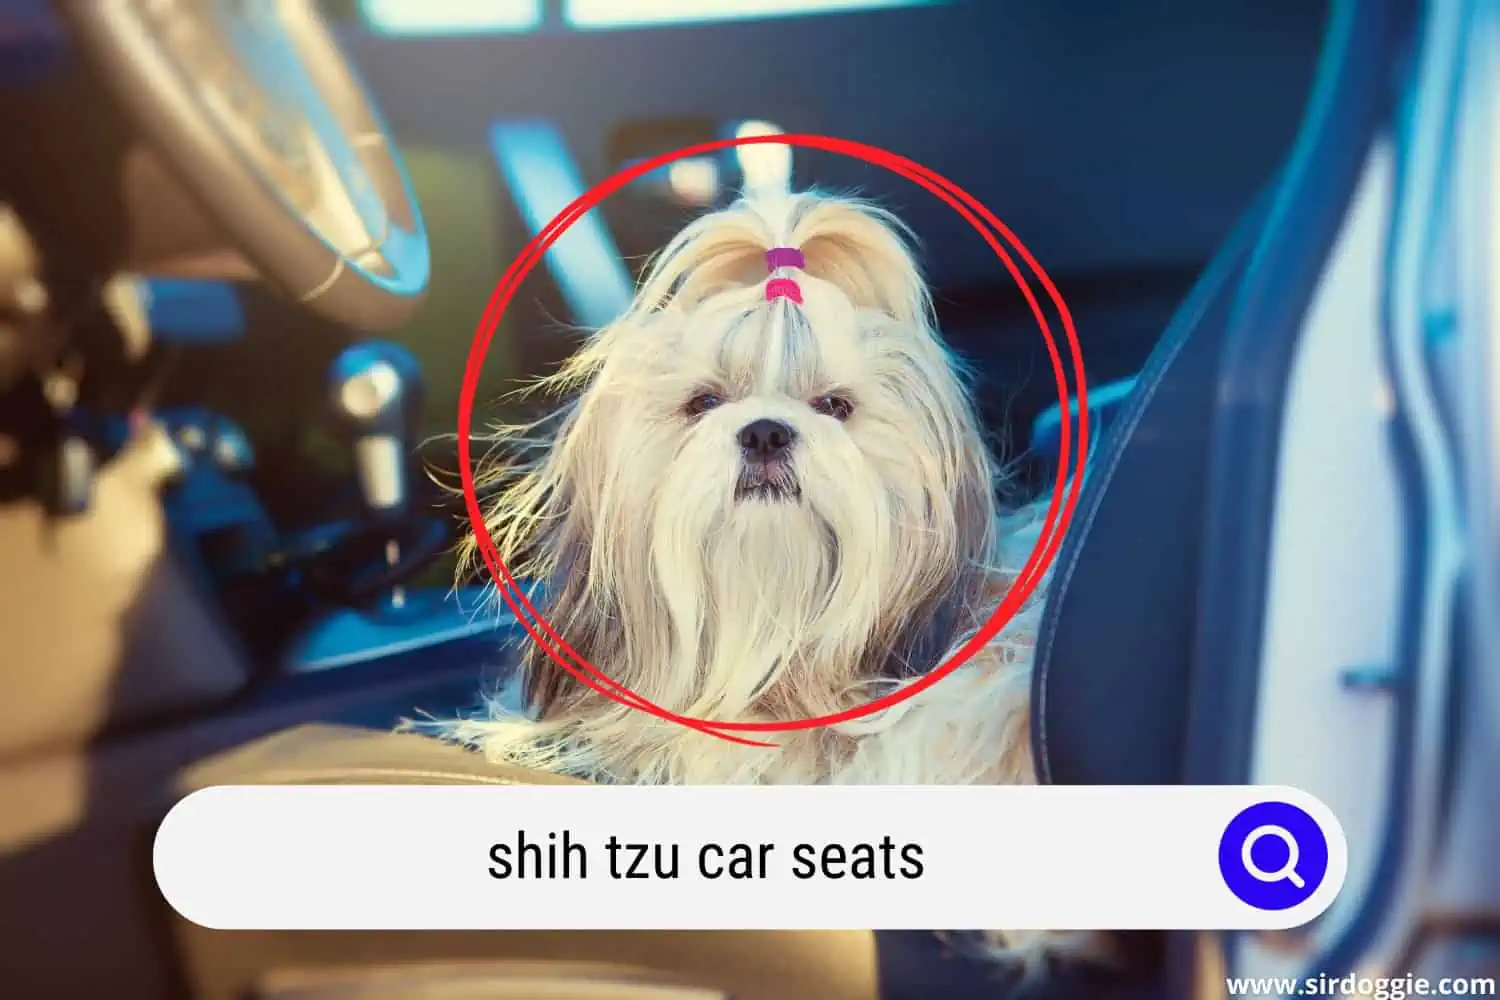 shih tzu dog in car seat